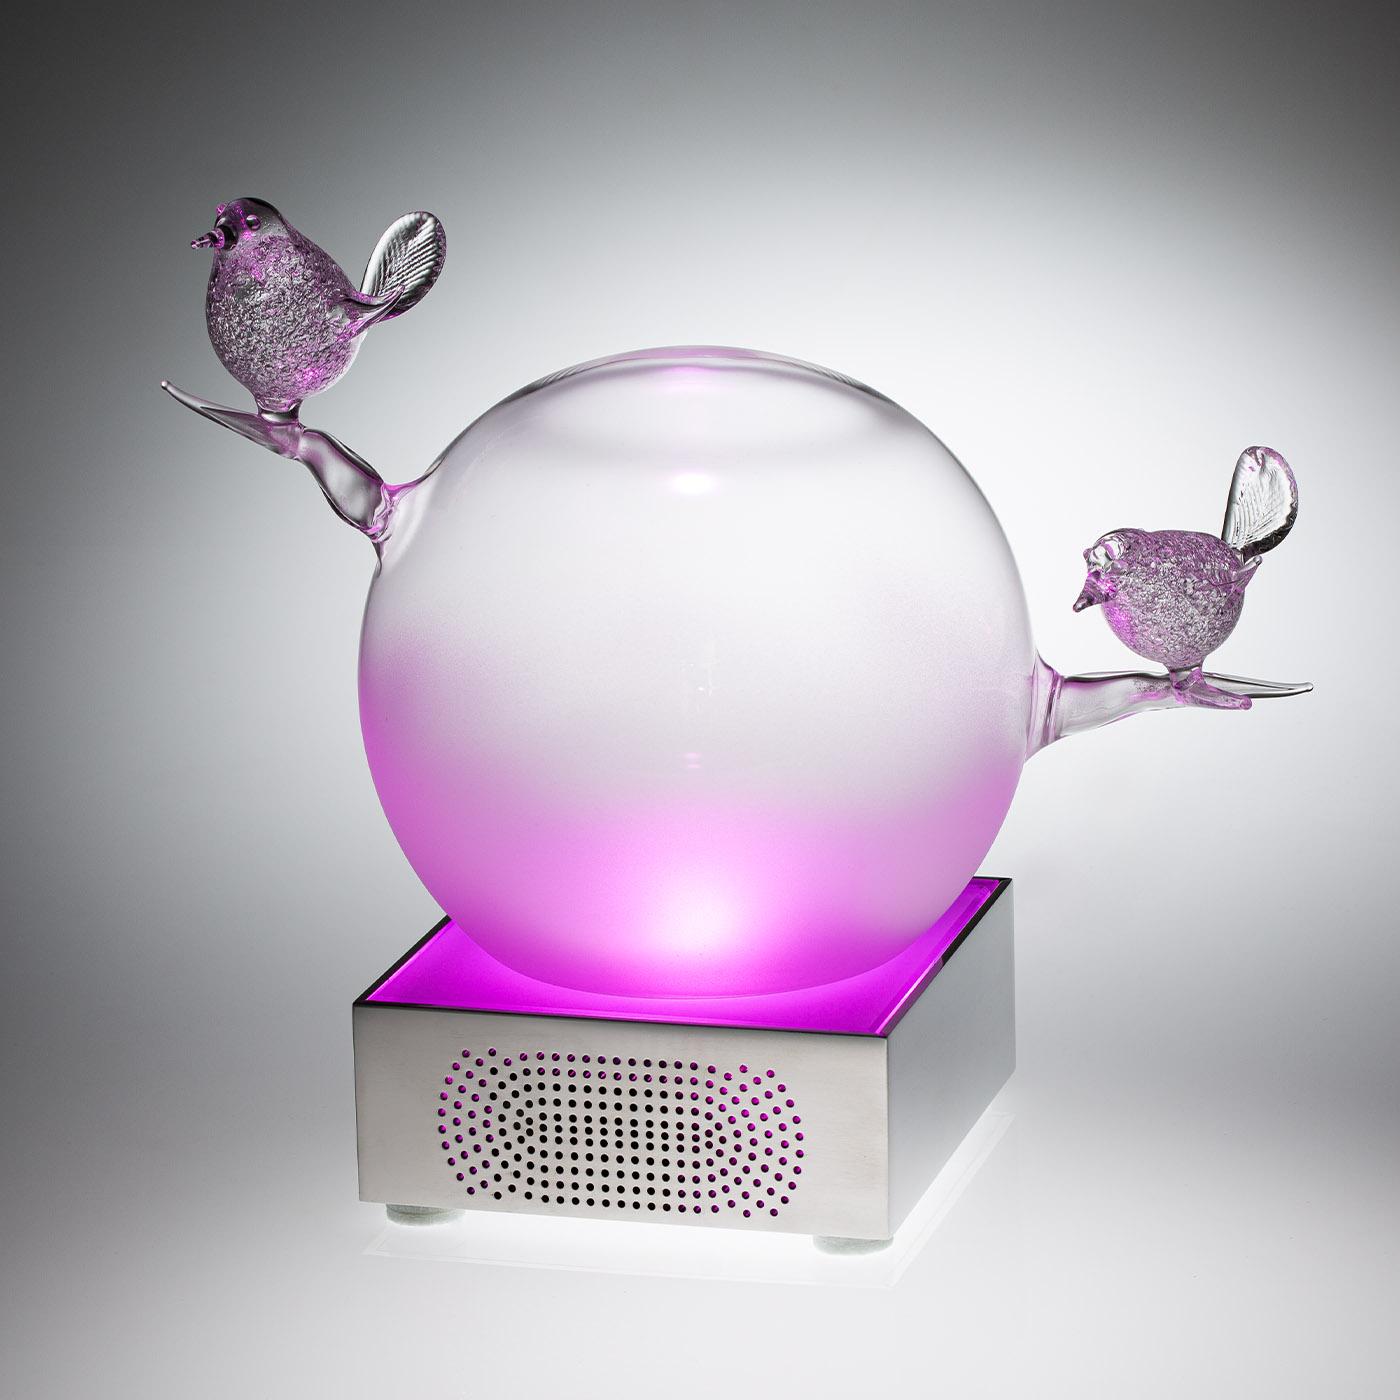 Tornasole est une lampe qui allie l'art du verre soufflé à la main, signature de Casarialto, à une technologie sophistiquée. Le dispositif intégré dans la lampe est chargé de contrôler la qualité de l'air dans l'environnement, grâce à un laser et à